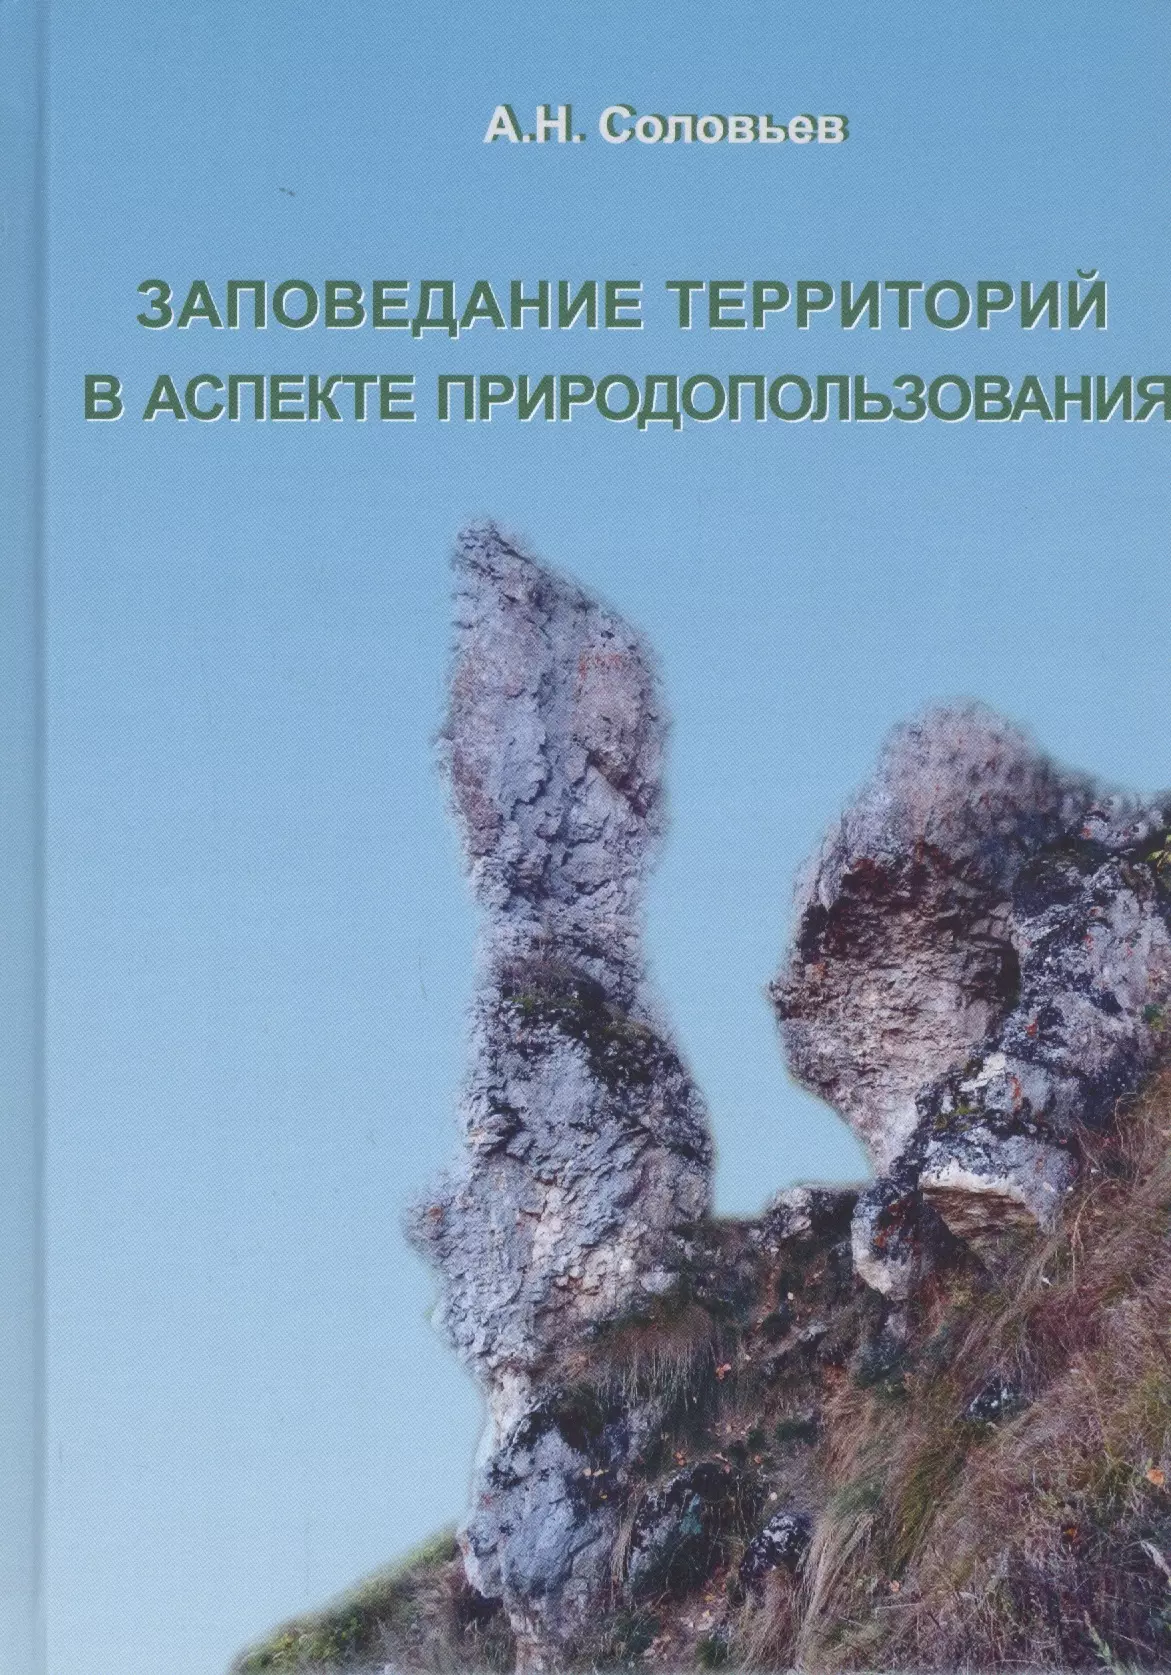 Соловьев Альберт Николаевич - Заповедание территорий в аспекте природопользования